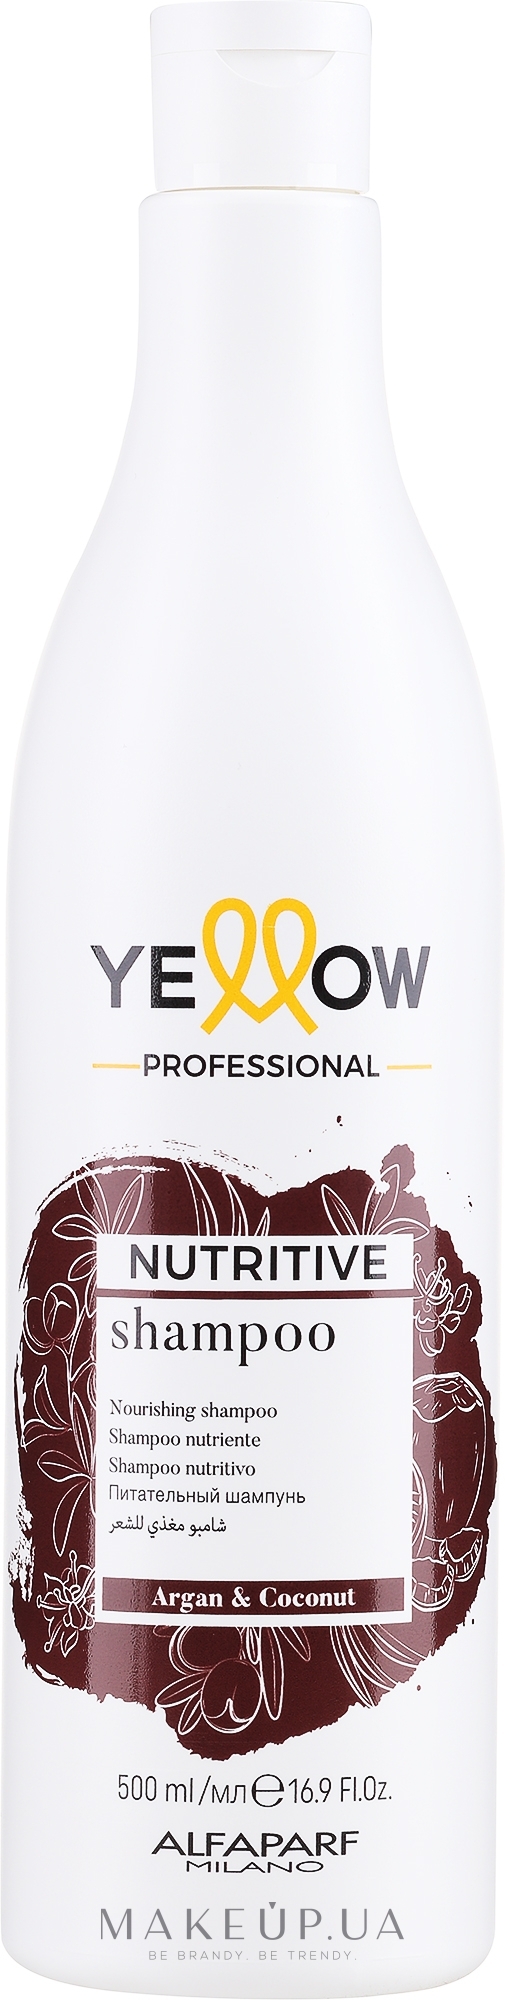 Питательный шампунь для волос - Yellow Nutritive Shampoo — фото 500ml